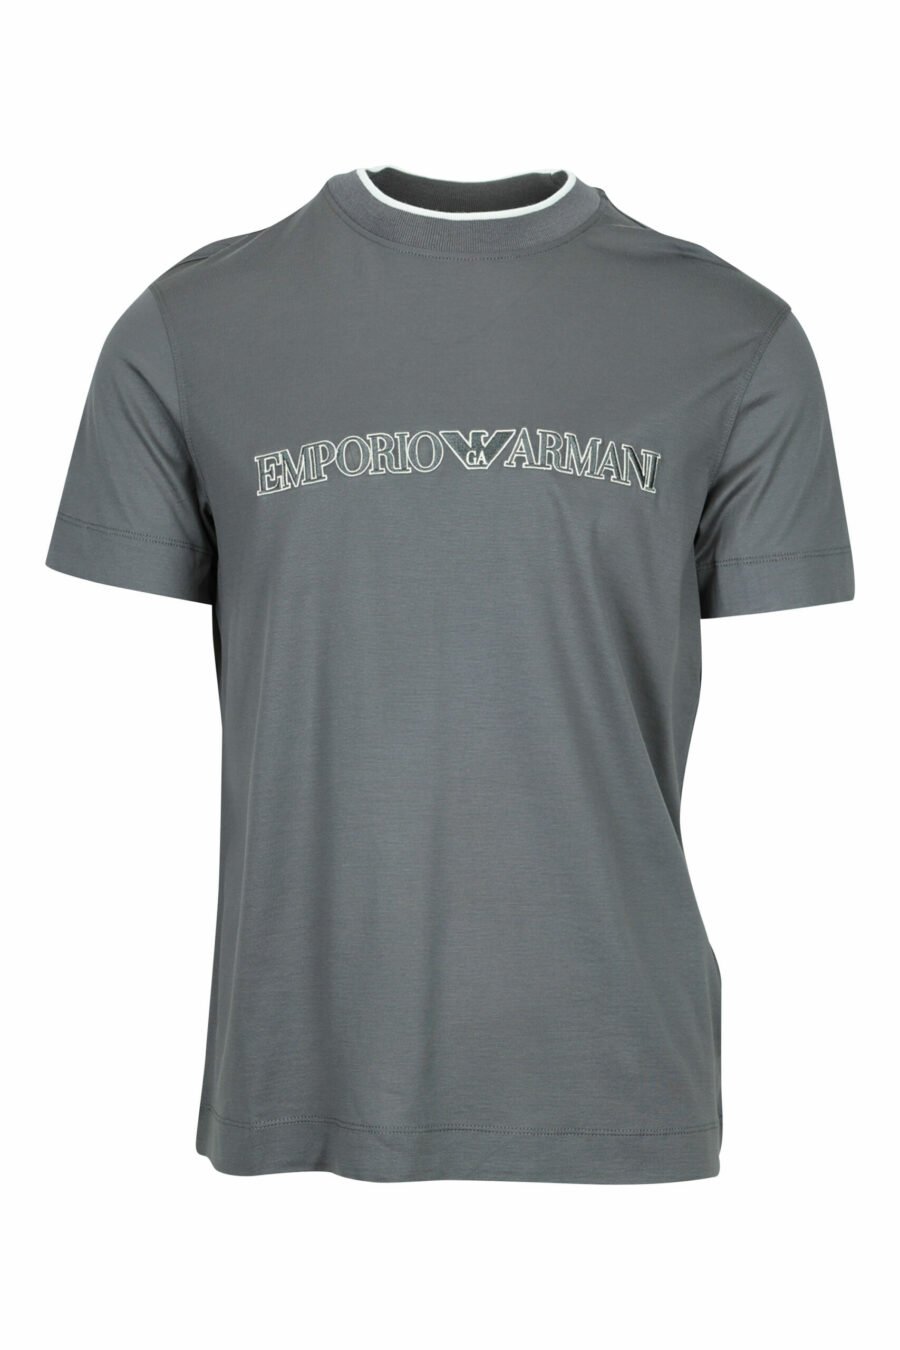 T-shirt cinzenta com o maxilogo "emporio" - 8058947987238 scaled